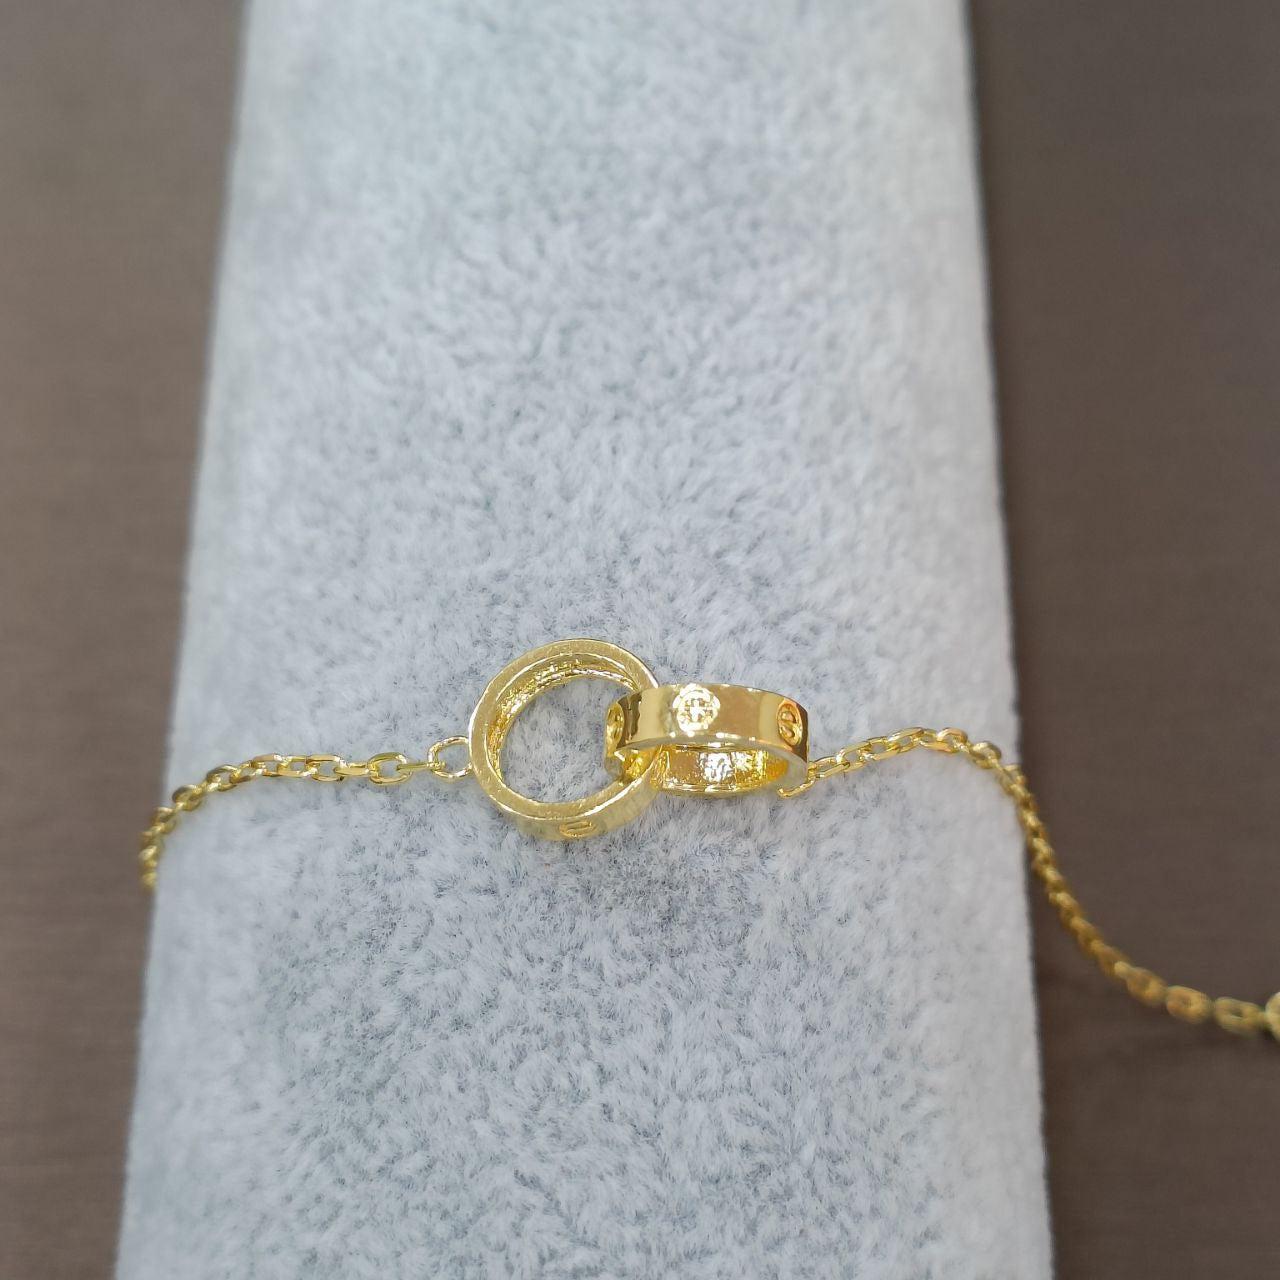 22k / 916 Gold C Design Bracelet-Bracelets-Best Gold Shop